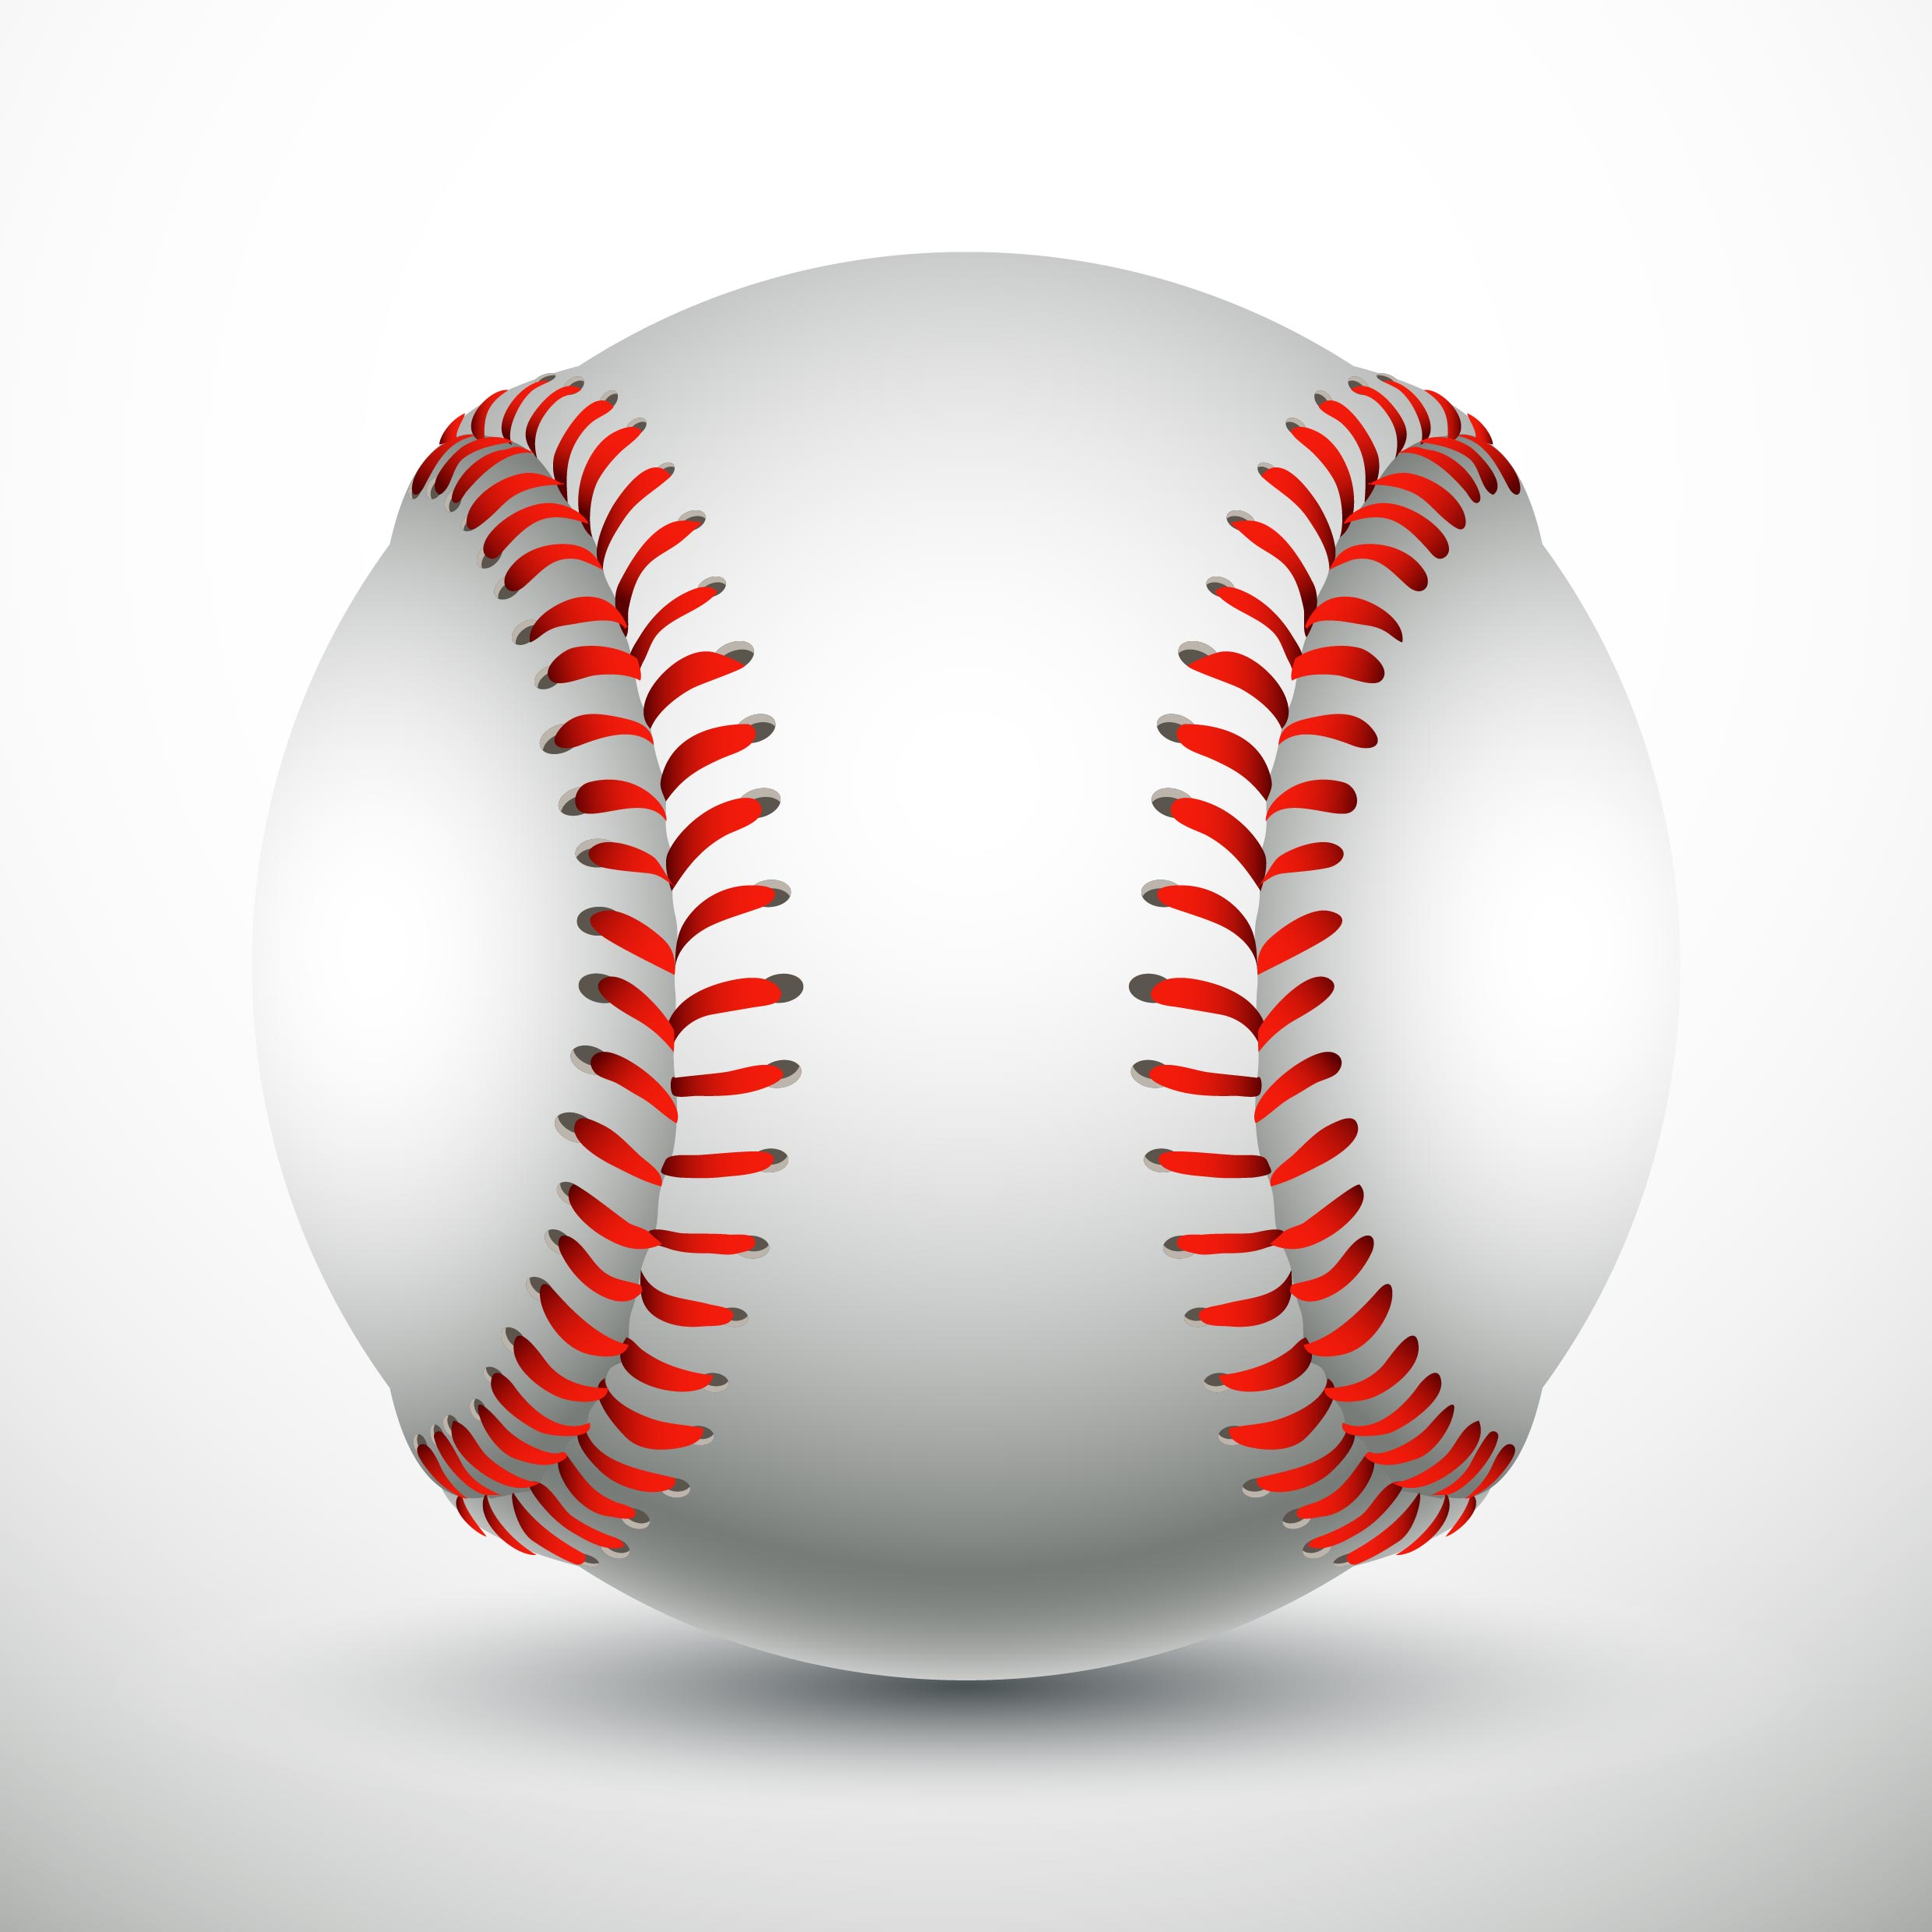 Realistic Baseball - Download Free Vectors, Clipart ...